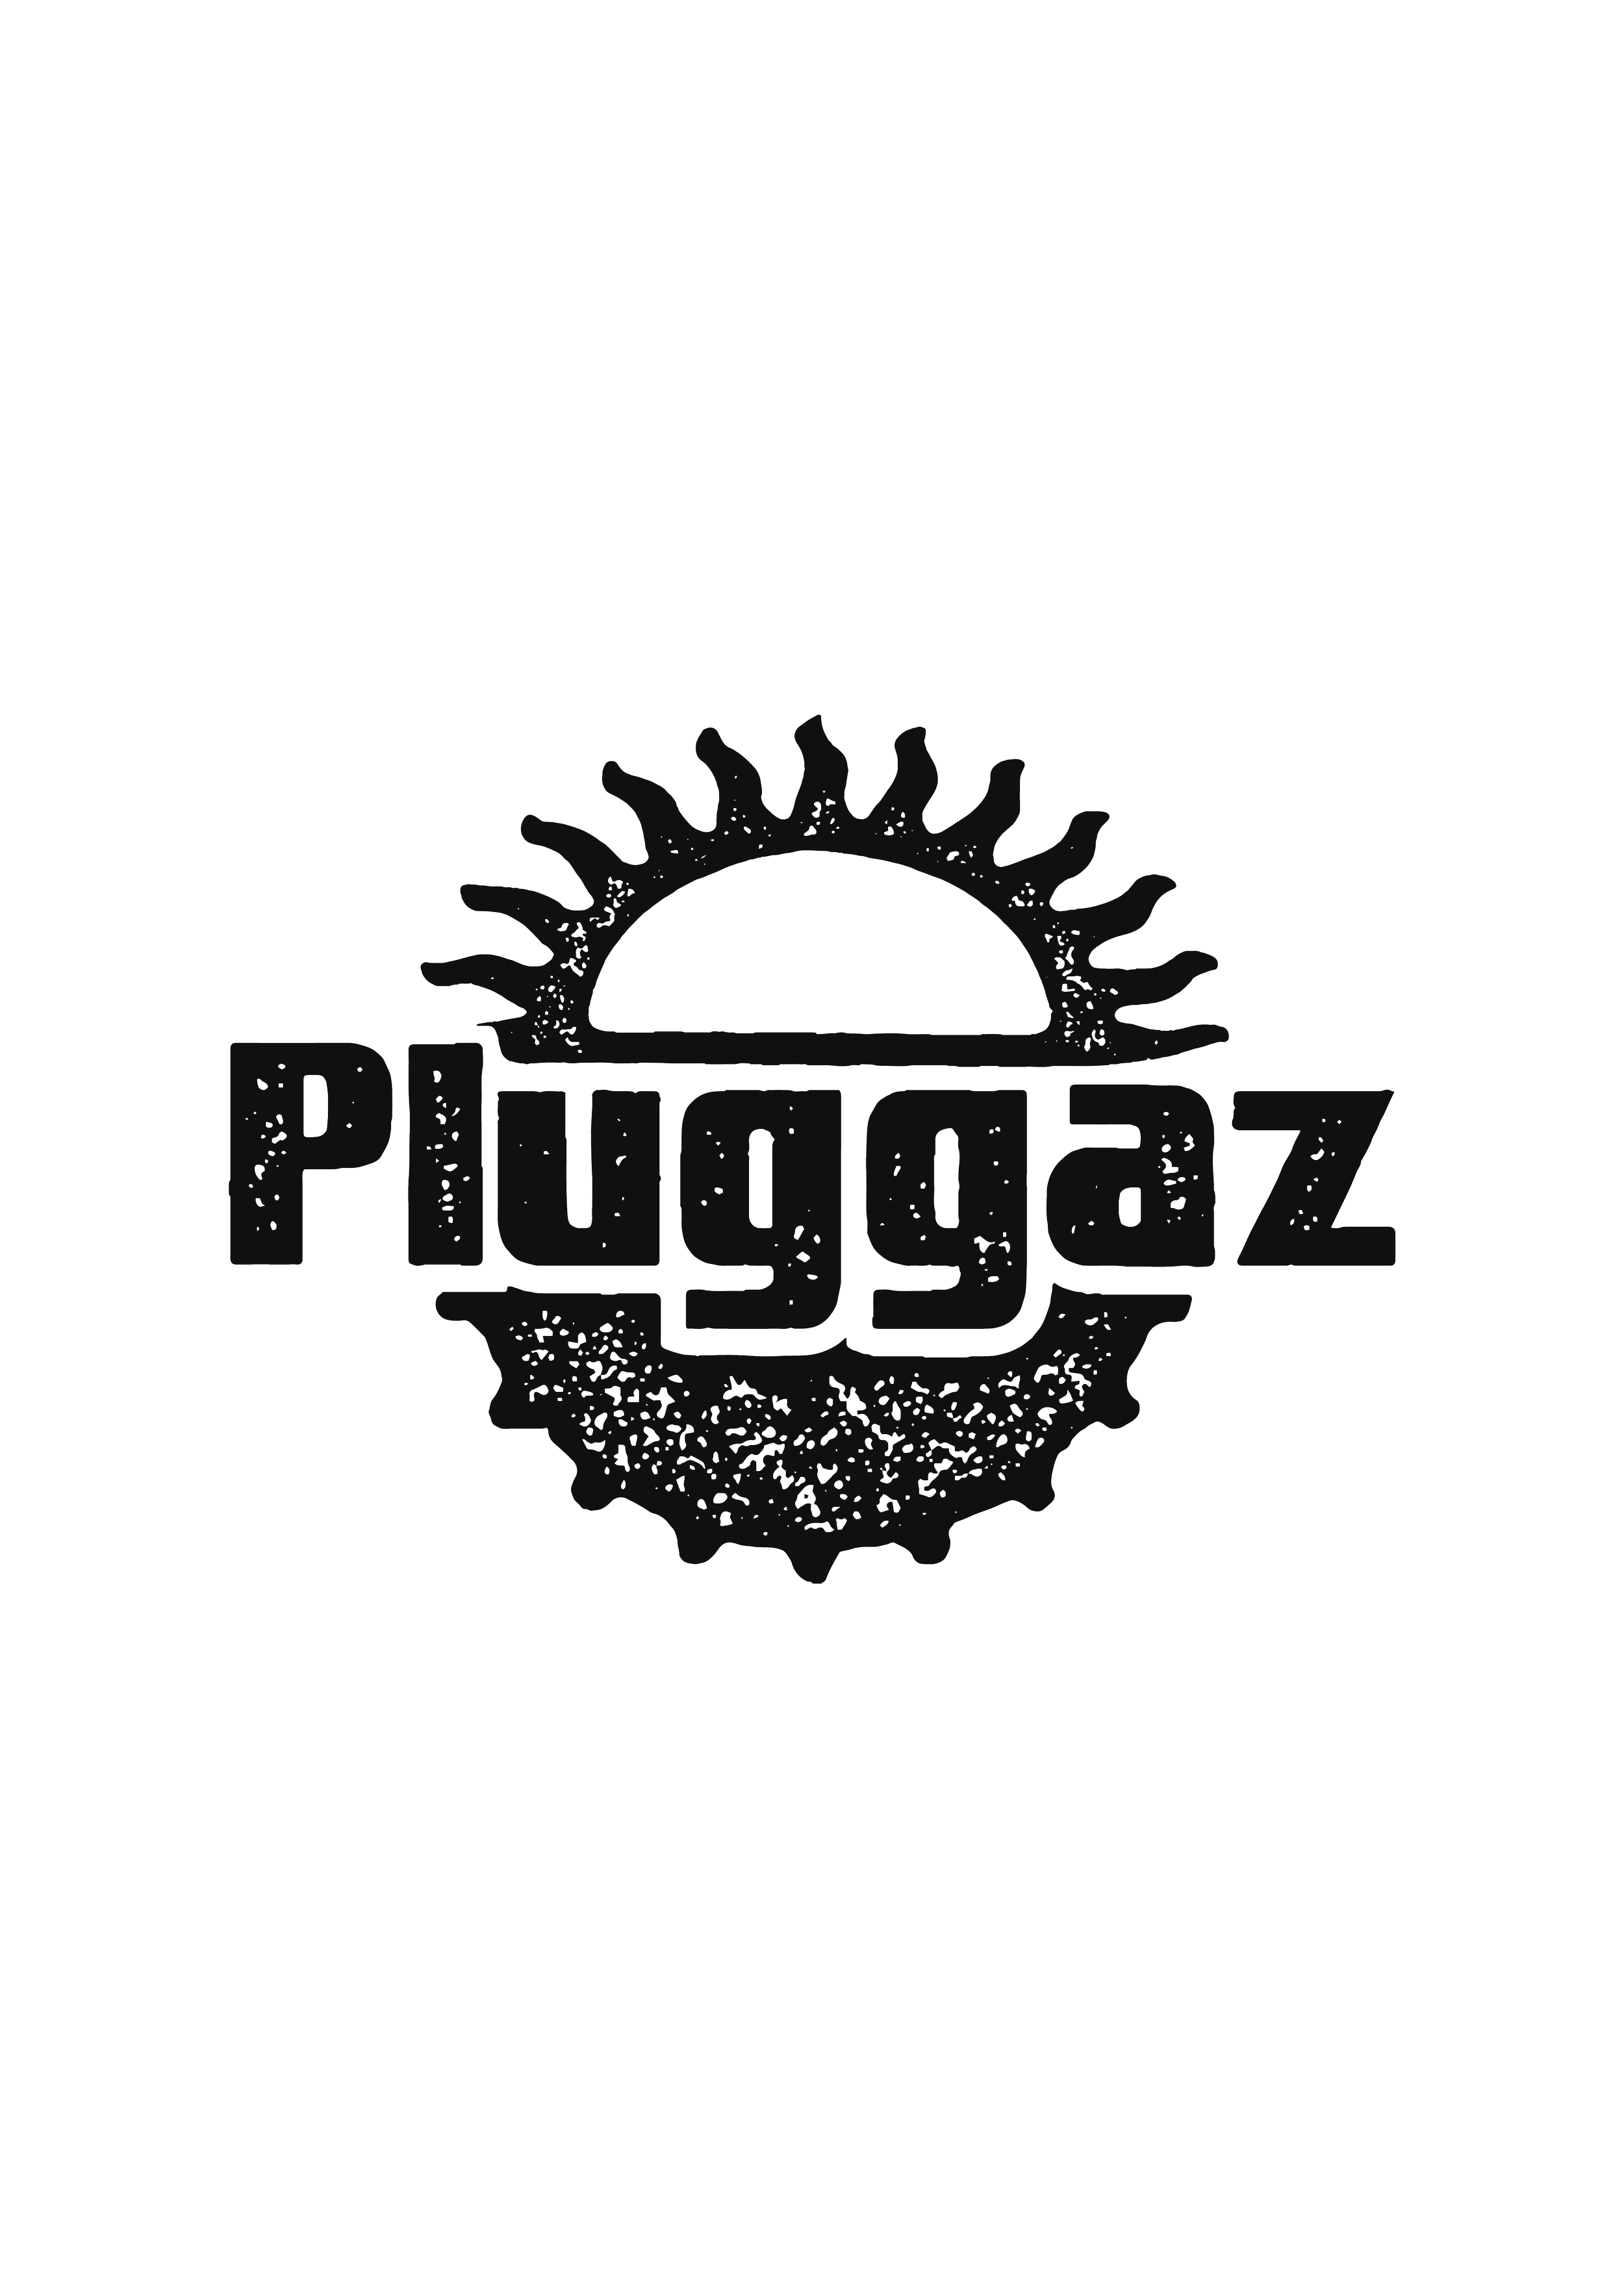 Website logo-02-01.png